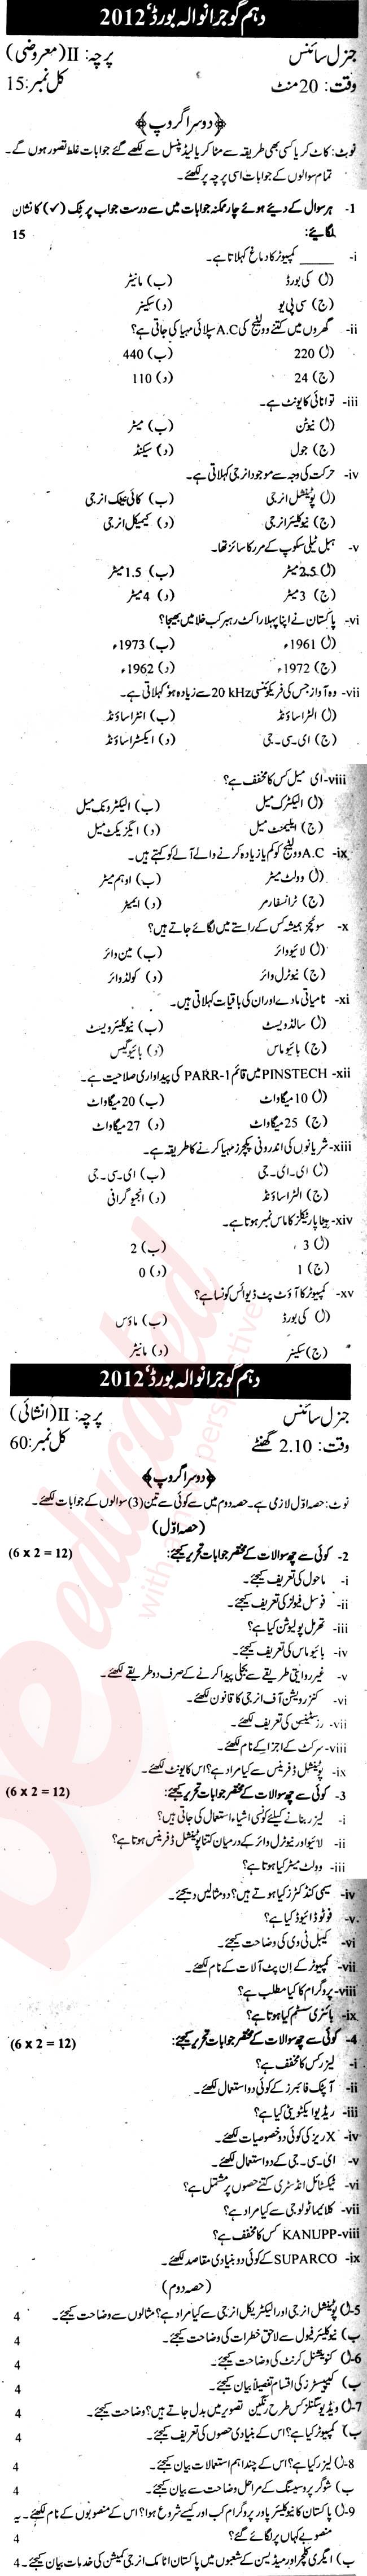 General Science 10th Urdu Medium Past Paper Group 2 BISE Gujranwala 2012